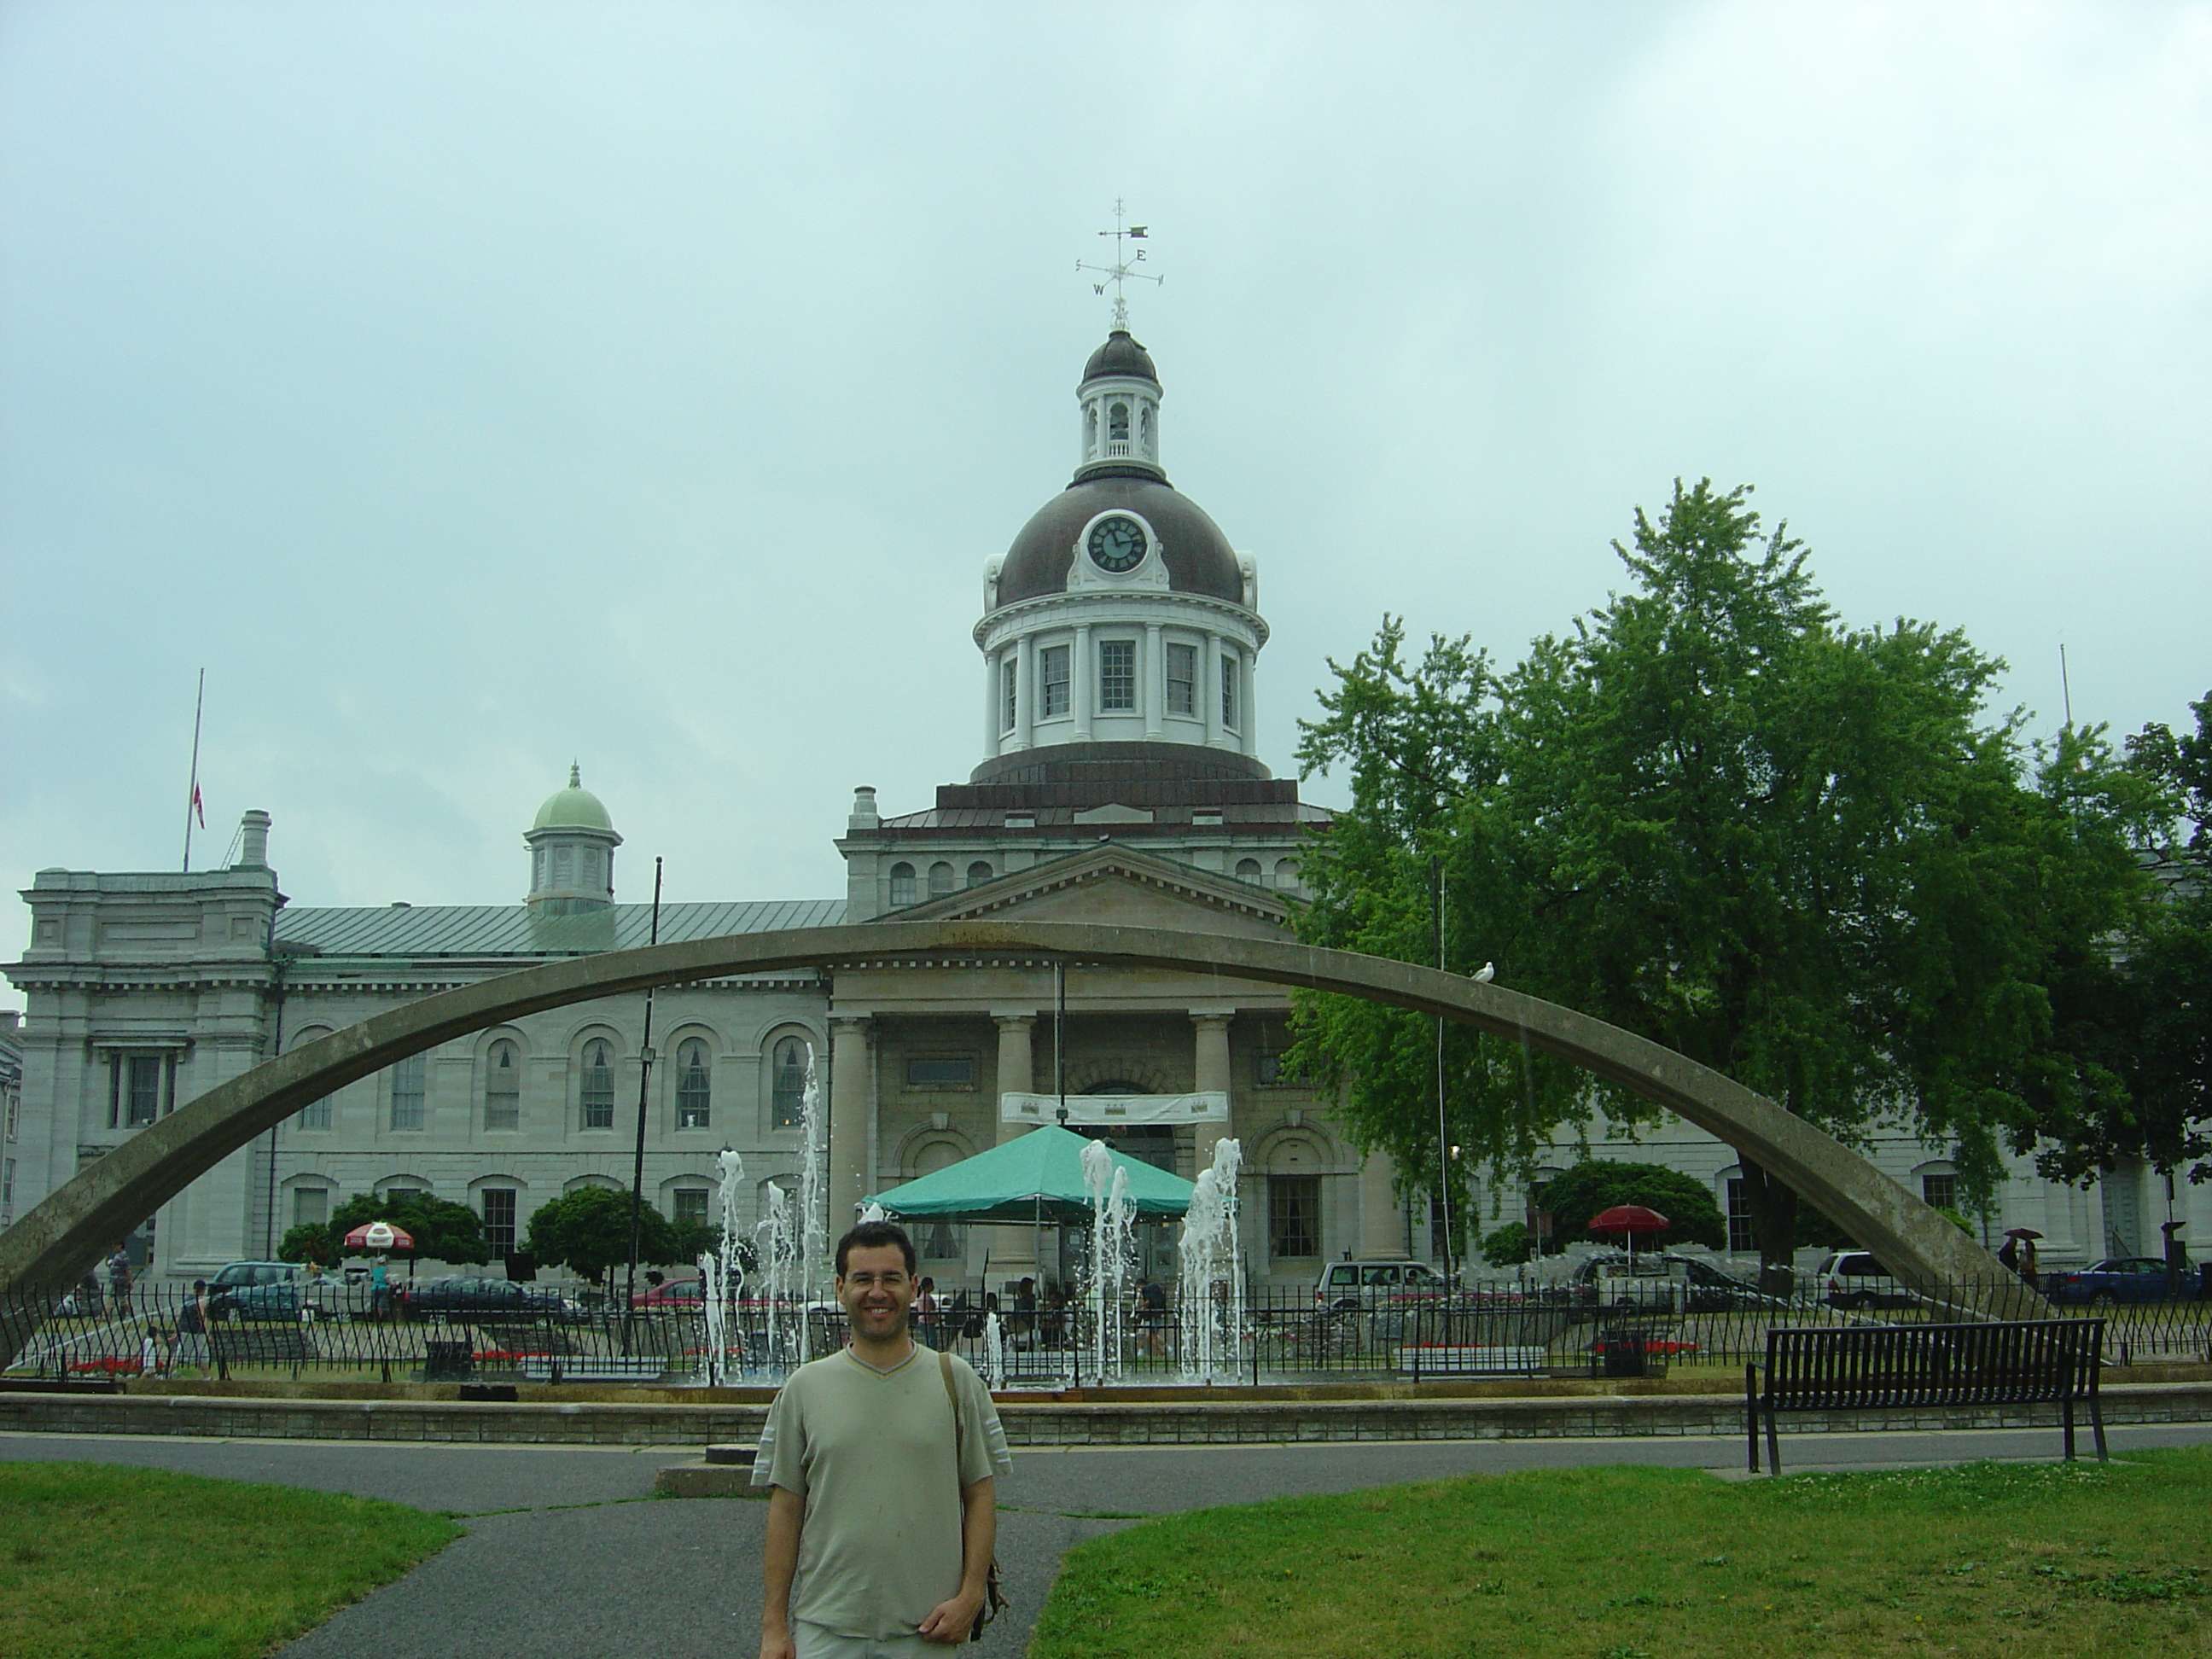 Canadá: Las Provincias de Ontario y Quebec - Blogs of Canada - Ontario (23)